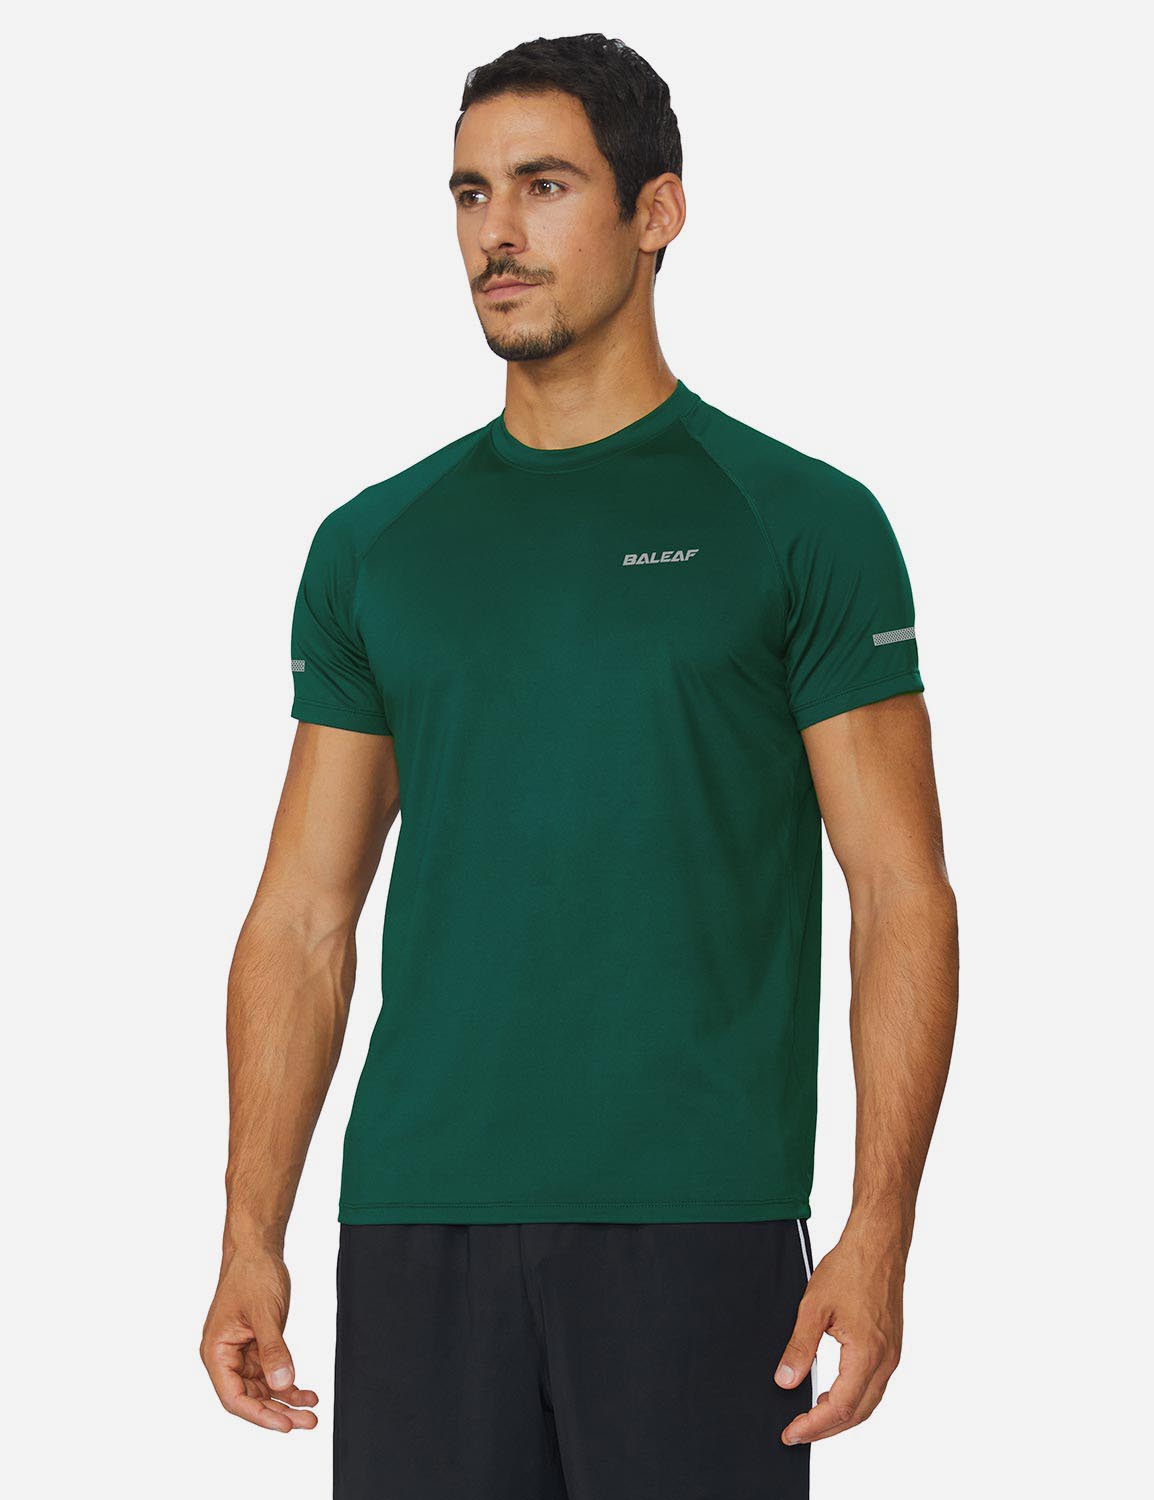 Baleaf Men's Workout Crew-Neck Slim-Cut Short Sleeved Shirt